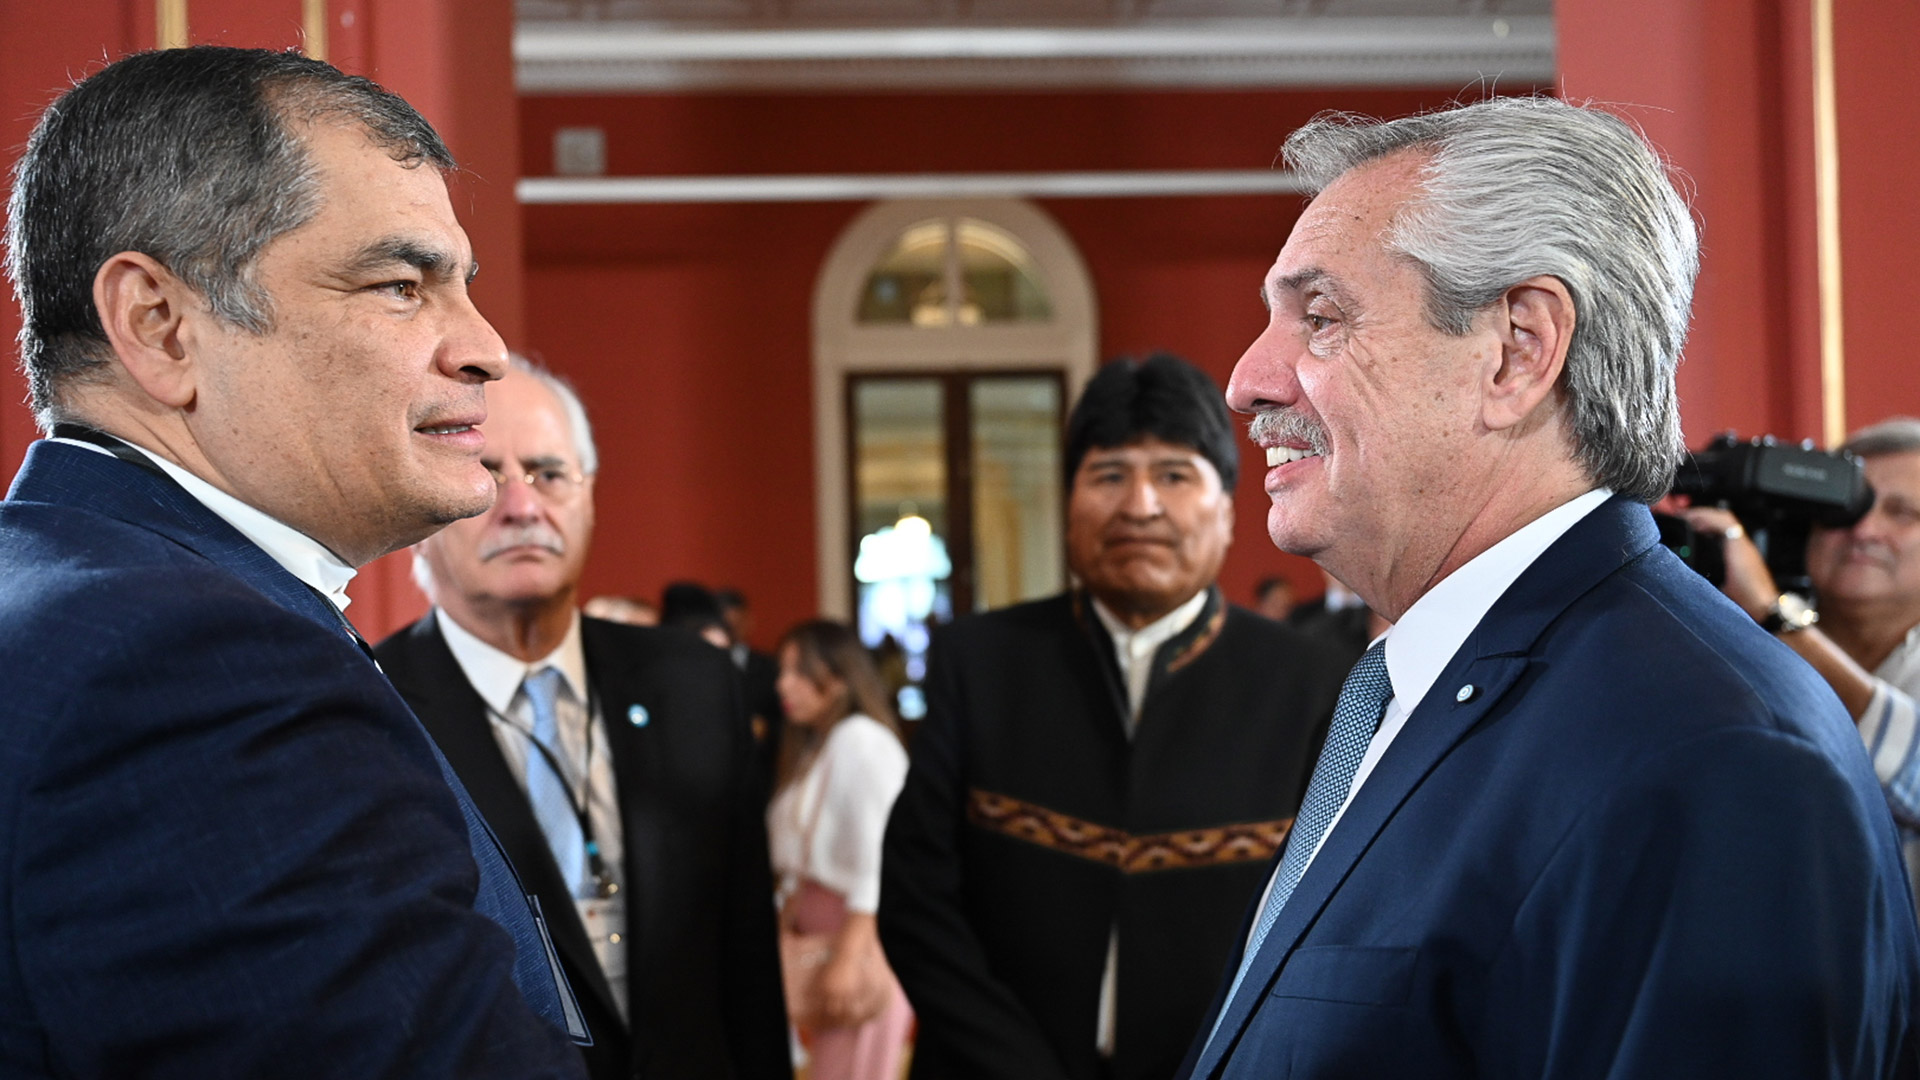 Alberto Fernández saluda en el Salón de los Pueblos Originarios de la Casa Rosada al ex presidente ecuatoriano, Rafael Correa. Detrás los observan el ministro de Defensa, Jorge Taiana y el ex mandatario boliviano, Evo Morales.